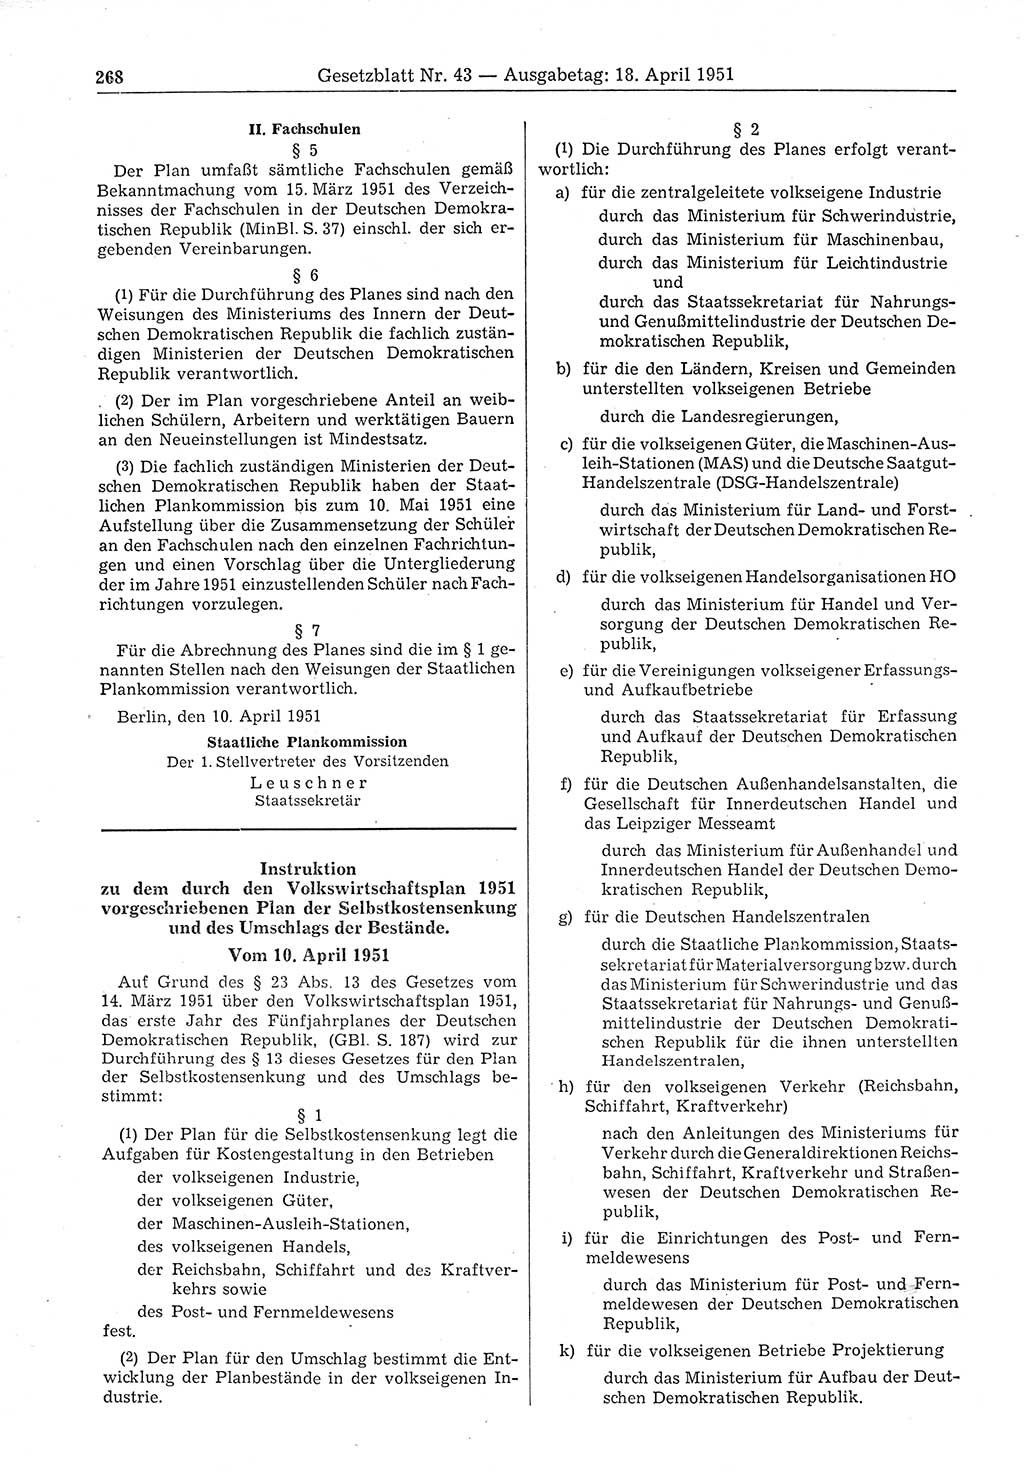 Gesetzblatt (GBl.) der Deutschen Demokratischen Republik (DDR) 1951, Seite 268 (GBl. DDR 1951, S. 268)